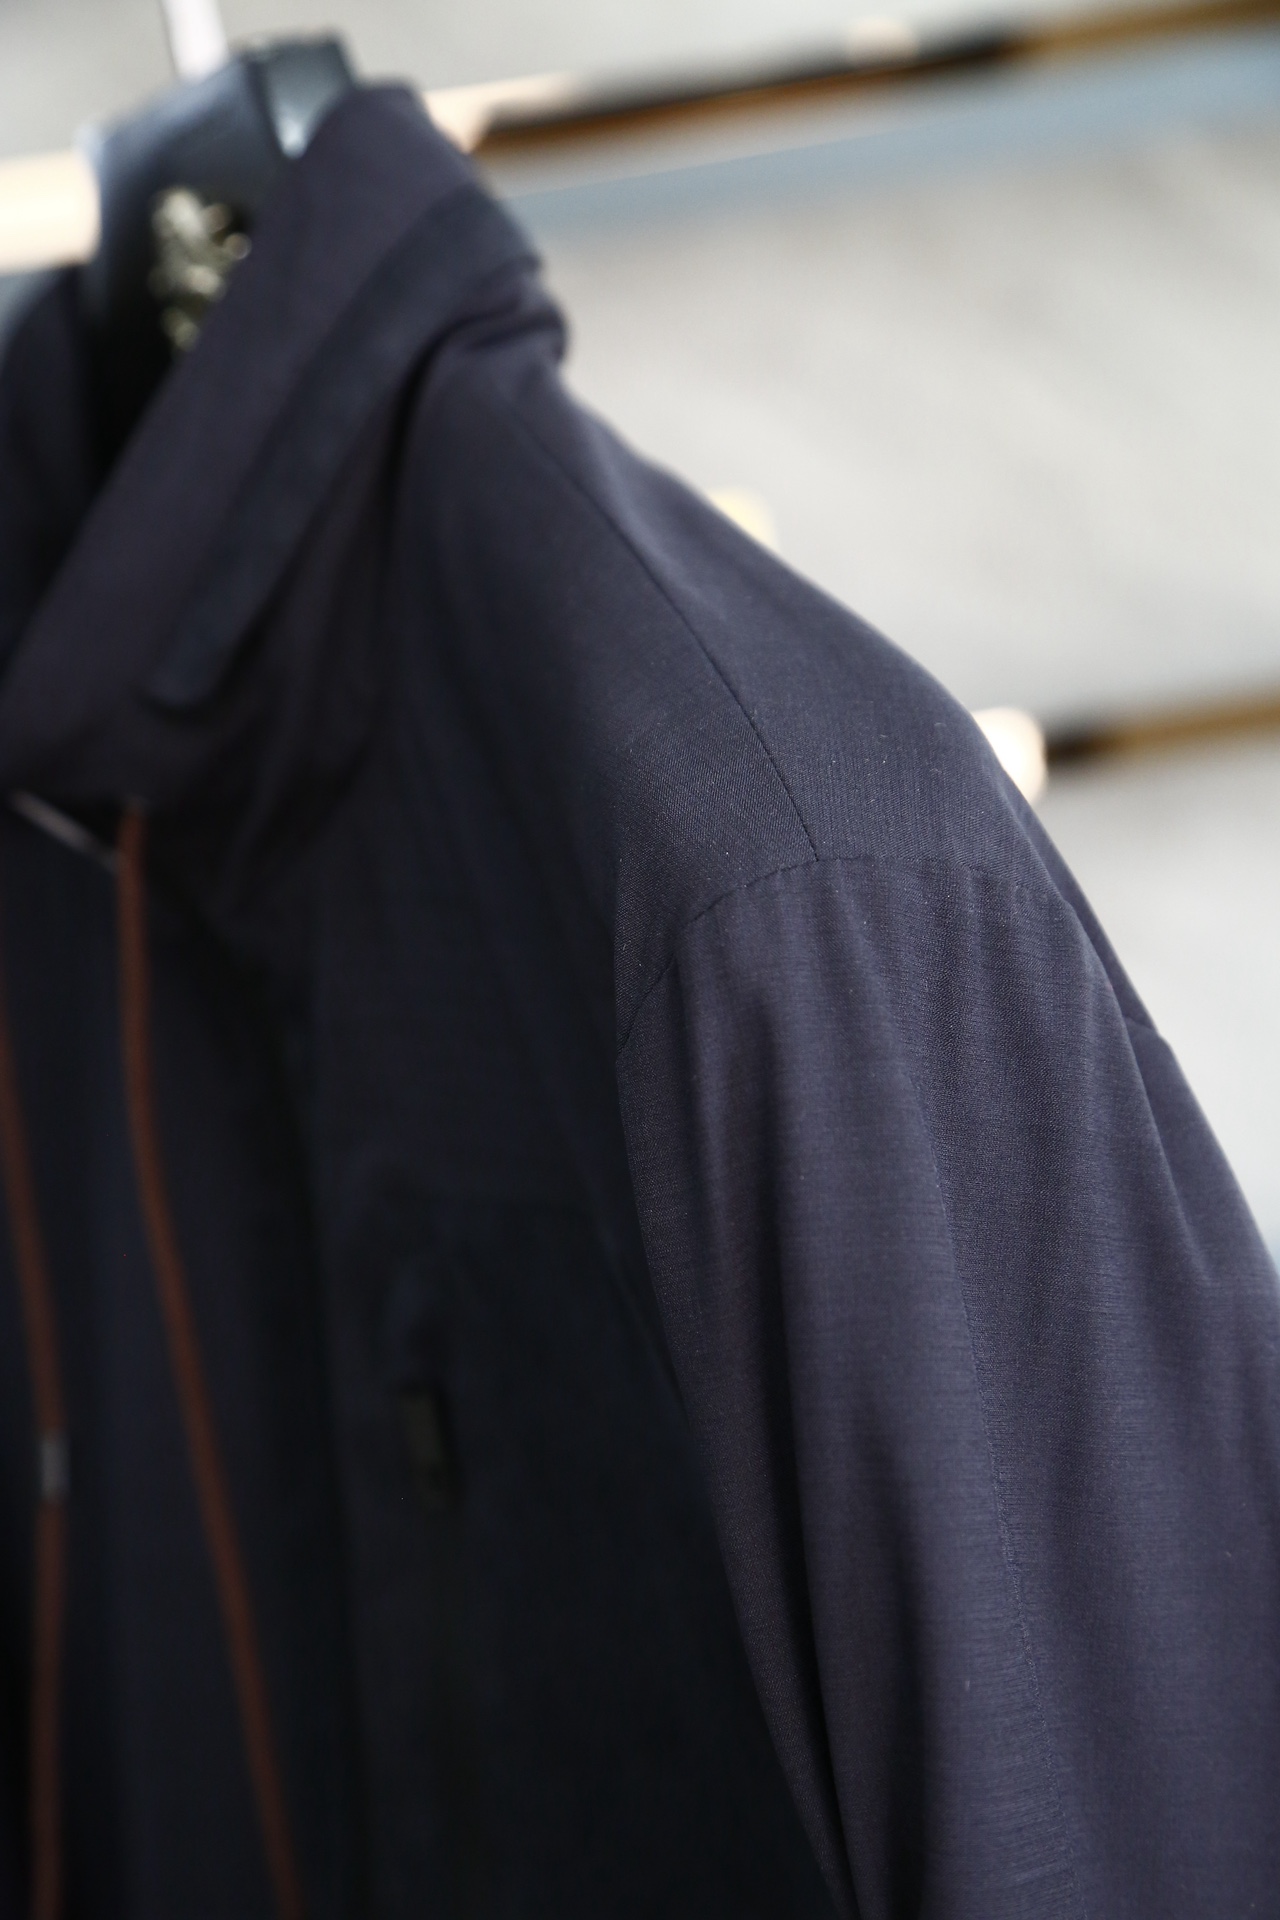 杰尼亚-24春夏新品高密度三防面料经典夹克外套此款夹克选用客供进口100%聚酯纤维成分打造高支数高密度尼